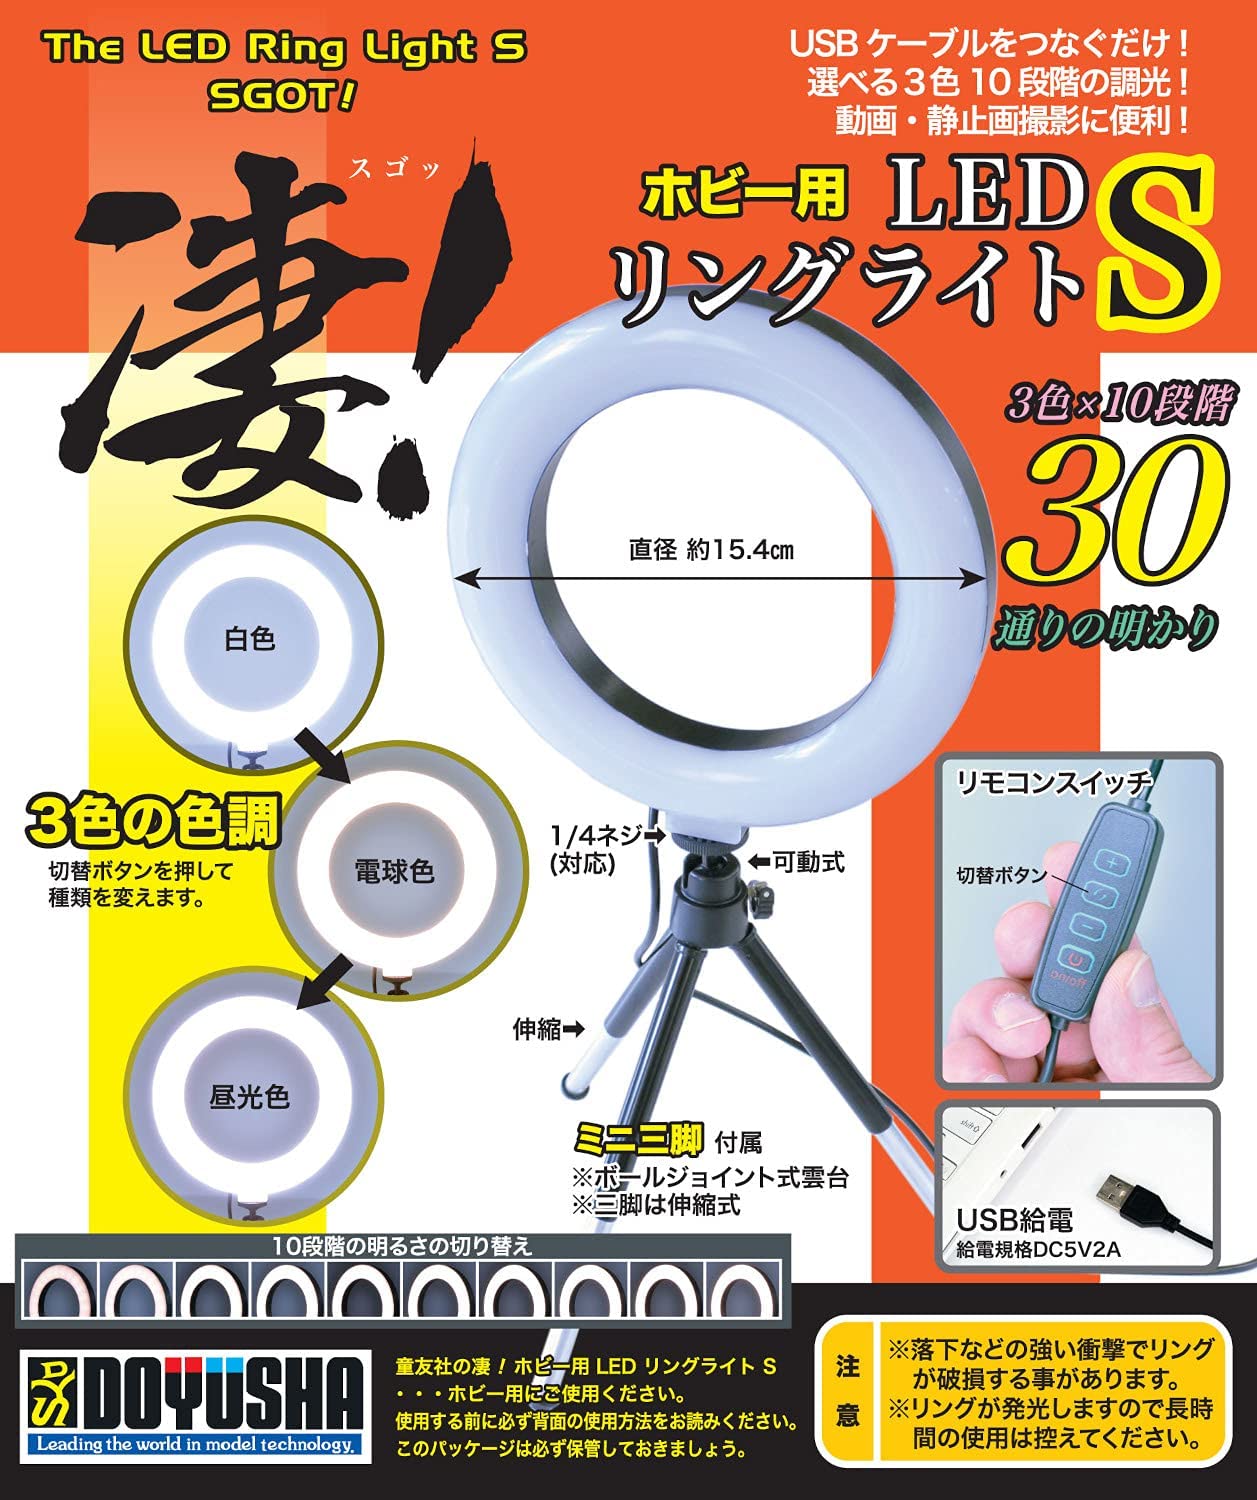 SGOT! LED Ring Light S for Hobby S